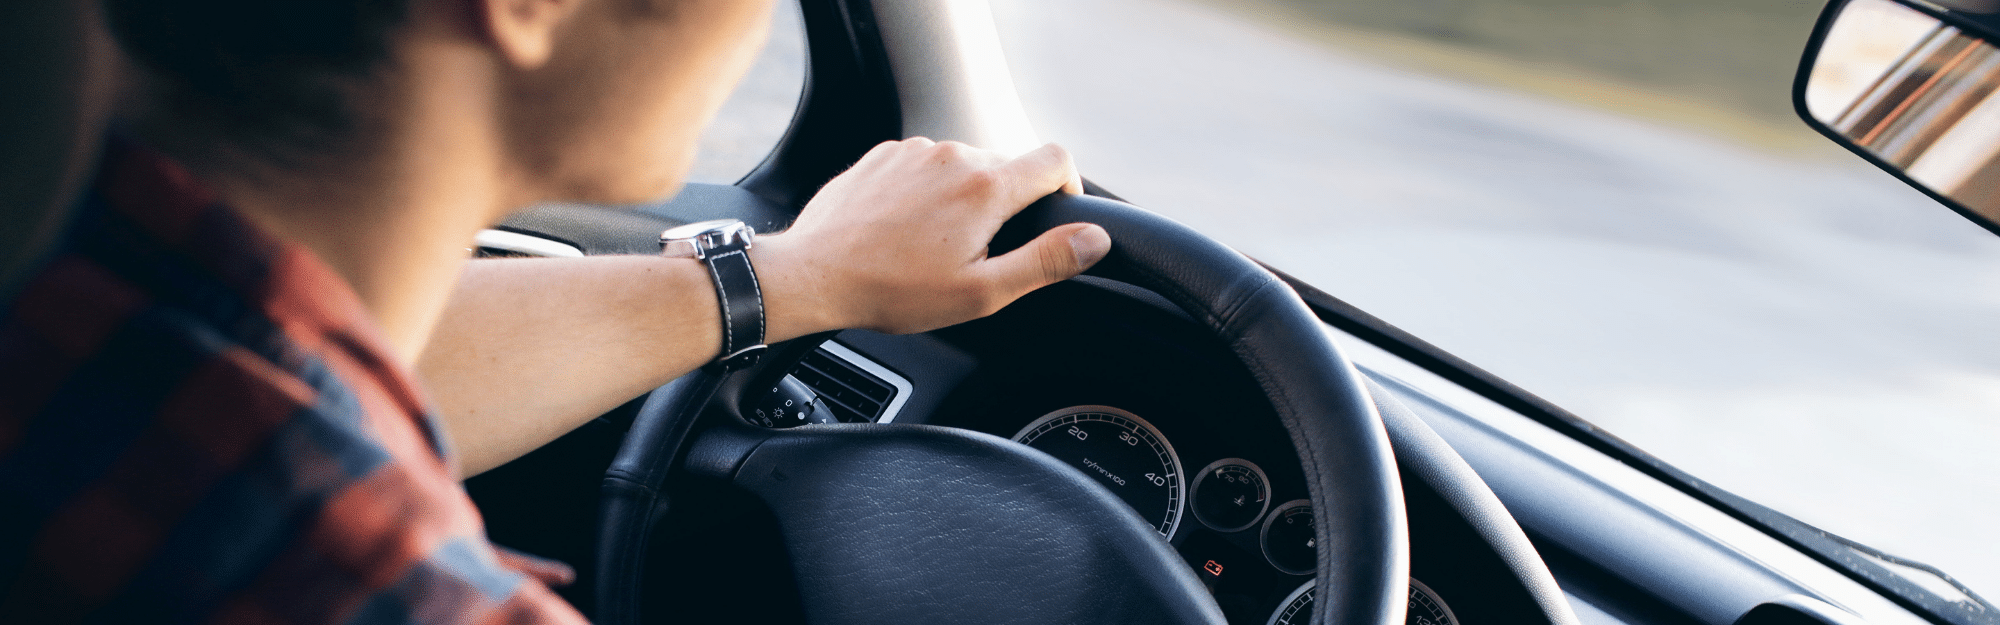 Quels sont les équipements de sécurité obligatoires en voiture ? - Blog  Avatacar